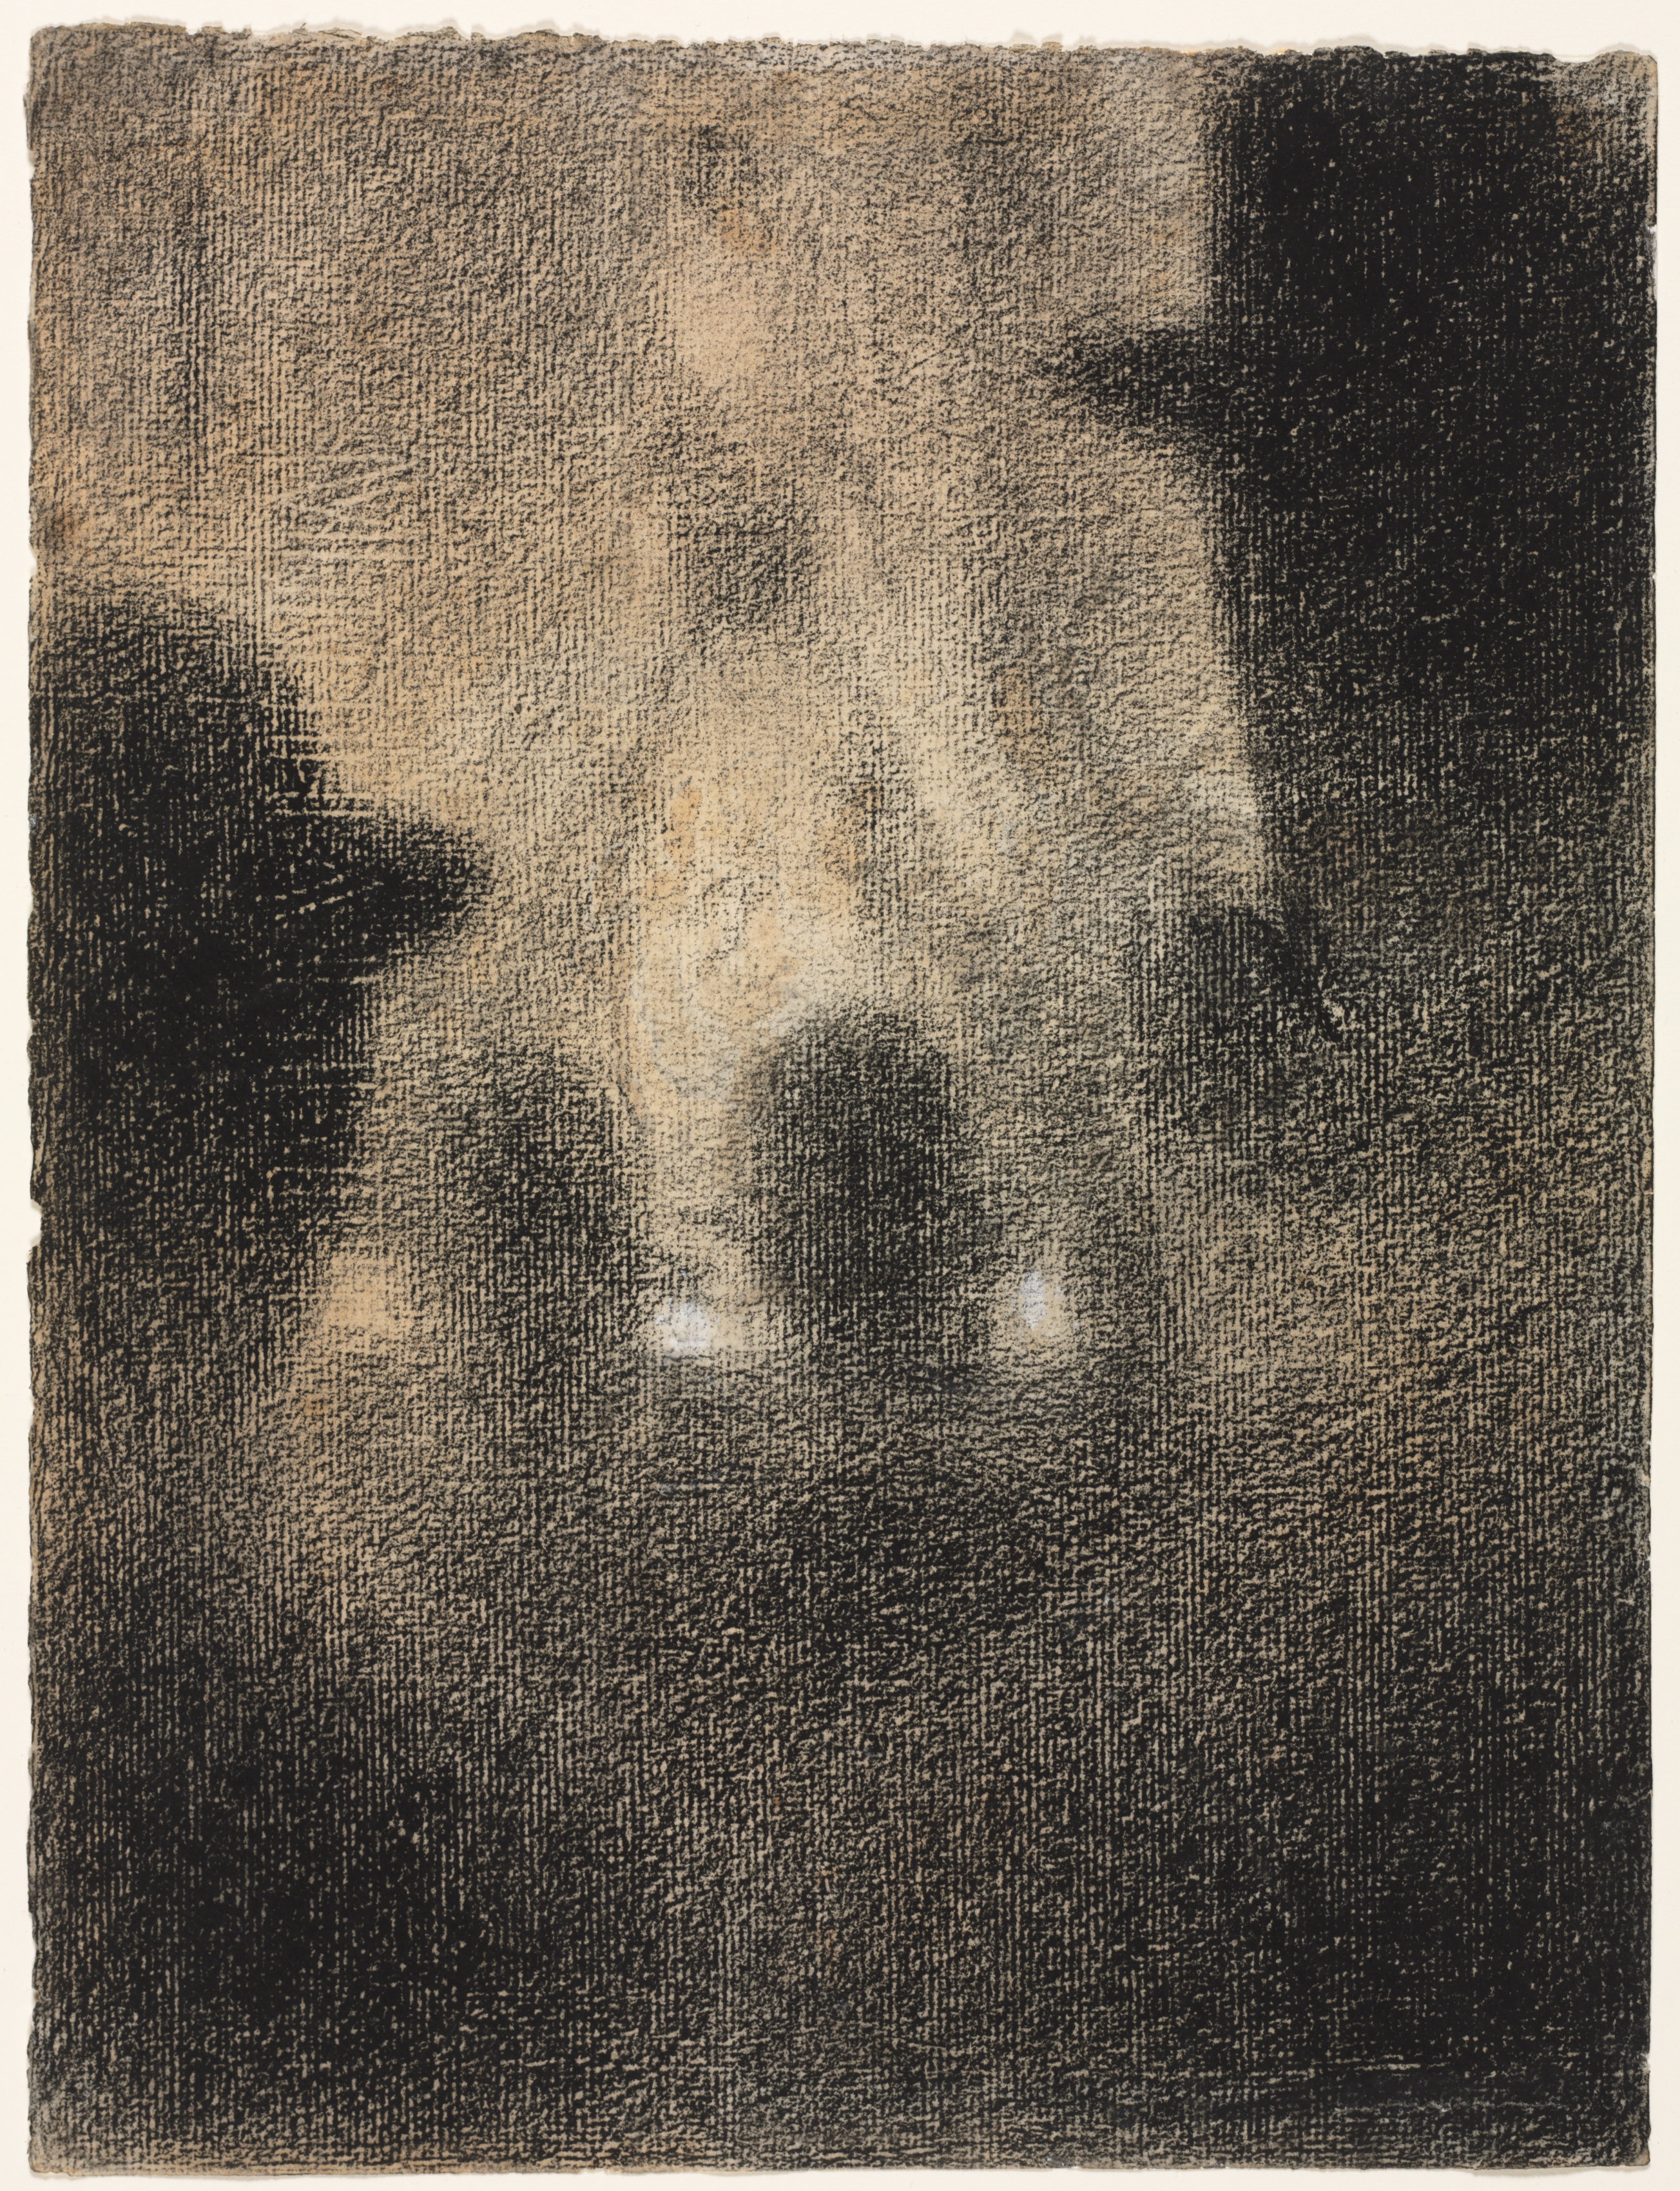 咖啡廳音樂會 by 喬治 秀拉 - 1887-88 年 - 31.4 x 23.6 厘米 